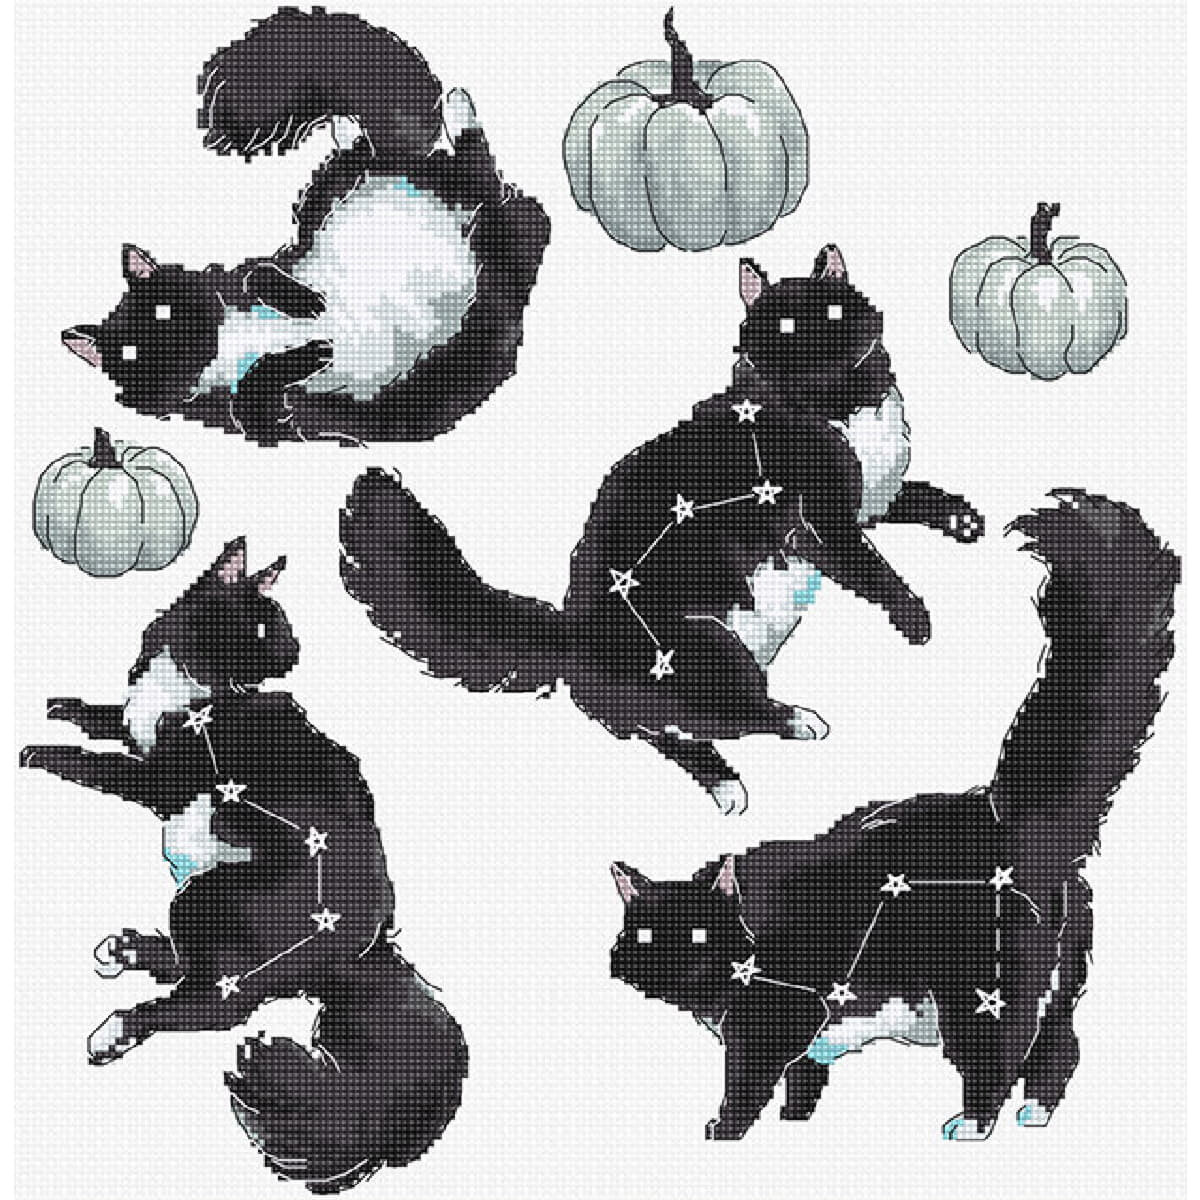 Eén illustratie toont vier zwarte katten in...